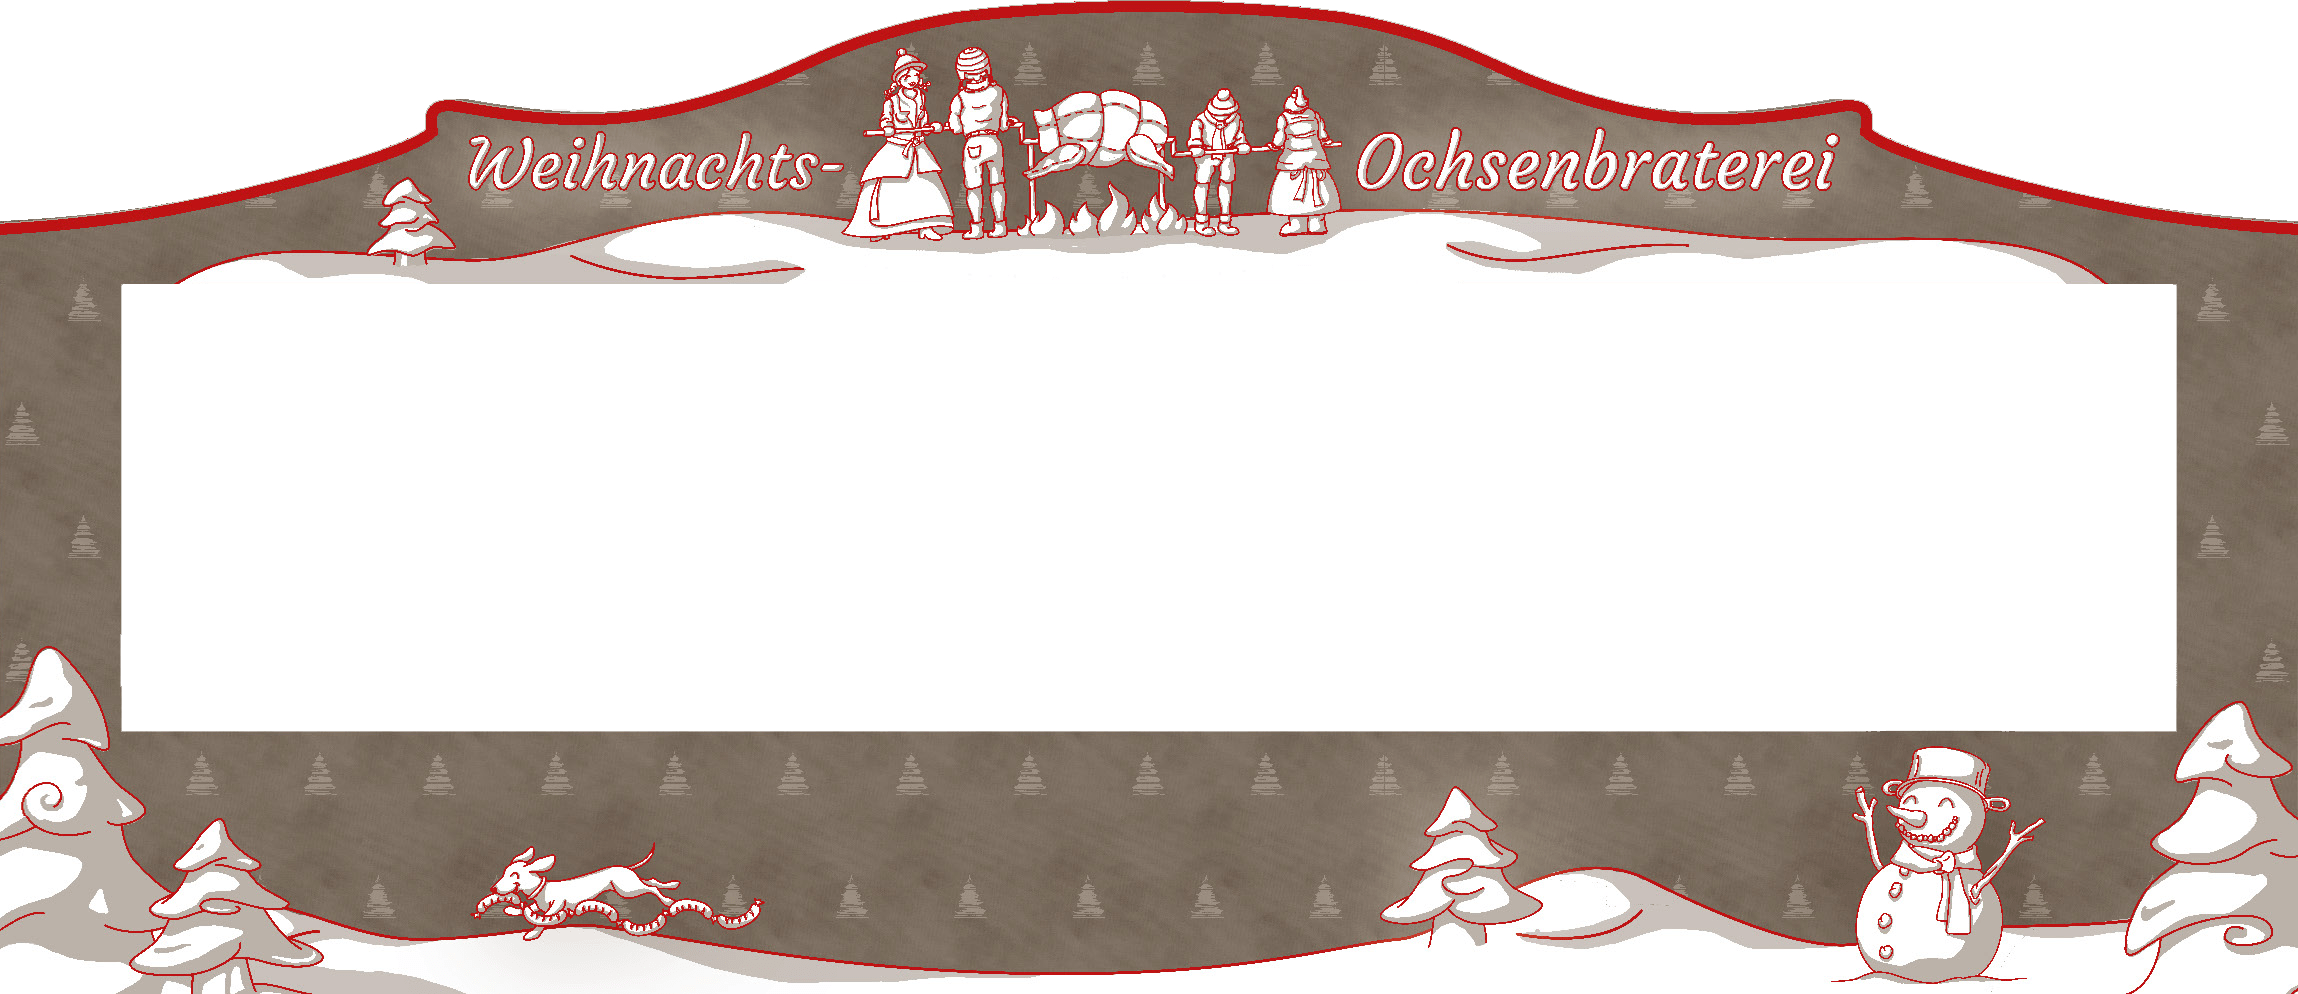 Der Rahmen des Weihnachtsmarktstands der Weihnachtsochsenbraterei München zeigt eine Illustration im Corporate Design der Ochsenbraterei mit dem Puppenspiel der Ochsenbraterei Fassade und dem Schriftzug "Weihnachtsochsenbraterei", schneebedeckten Nadelbäumen, einem Schneemann und einem Dackel. Im Hintergrund ein Muster aus dem Chinatum Logo in Anlehnung an Weihnachtsbäume.